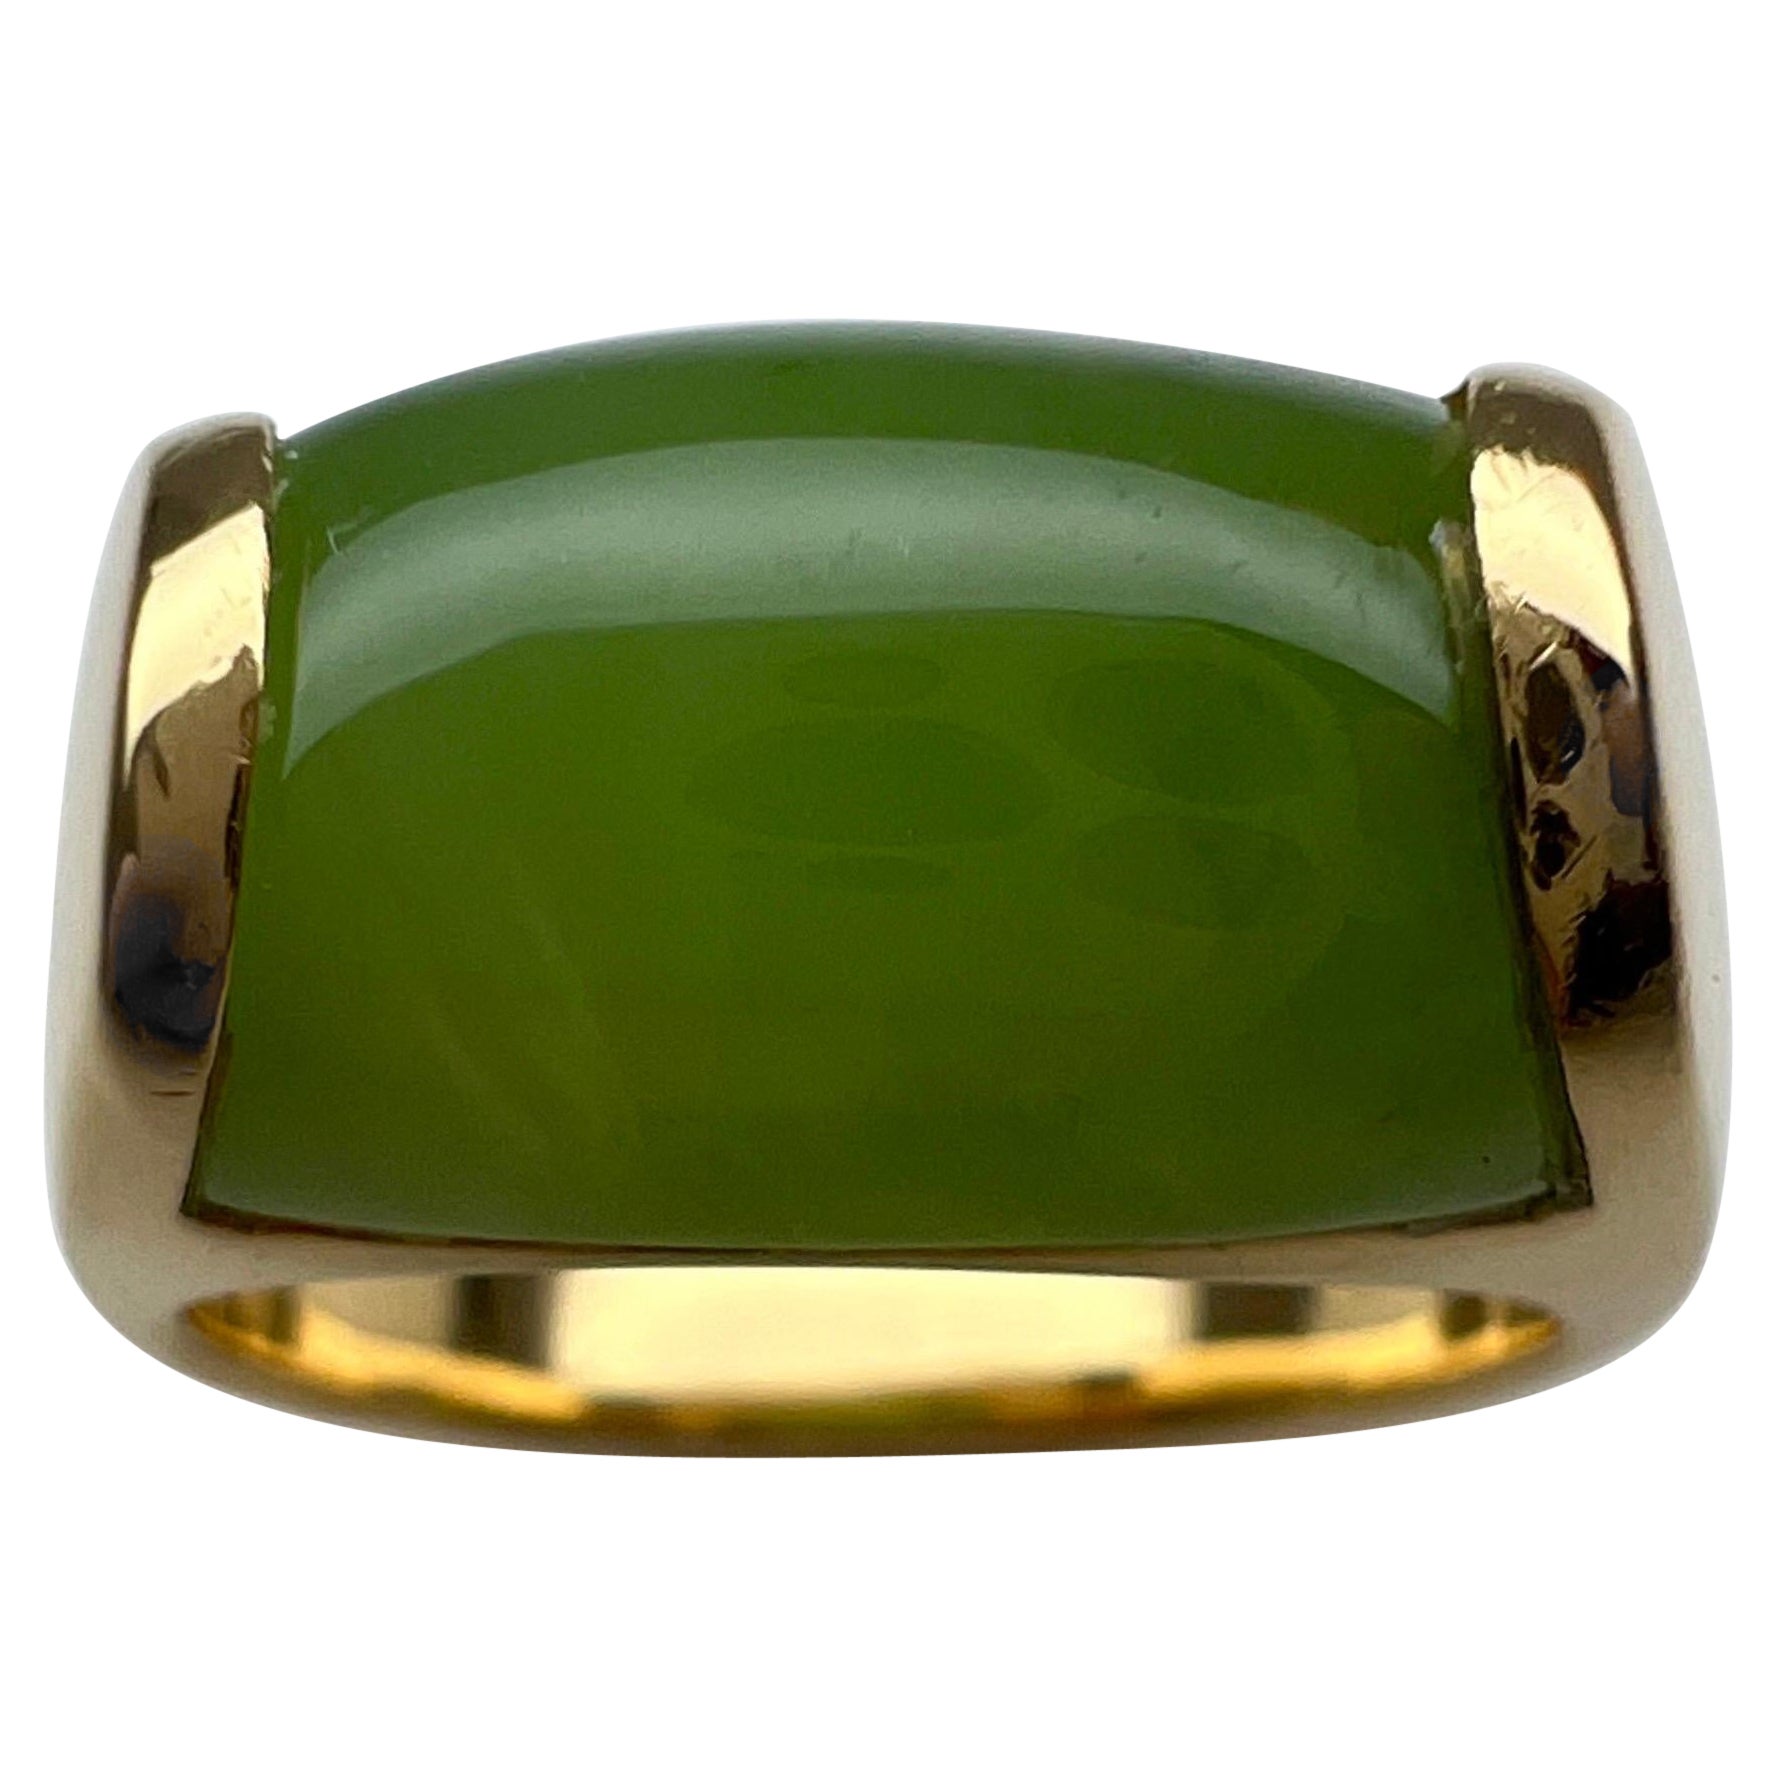 Rare Bvlgari Bulgari Green Jade Tronchetto 18 Karat Yellow Gold Ring with Box